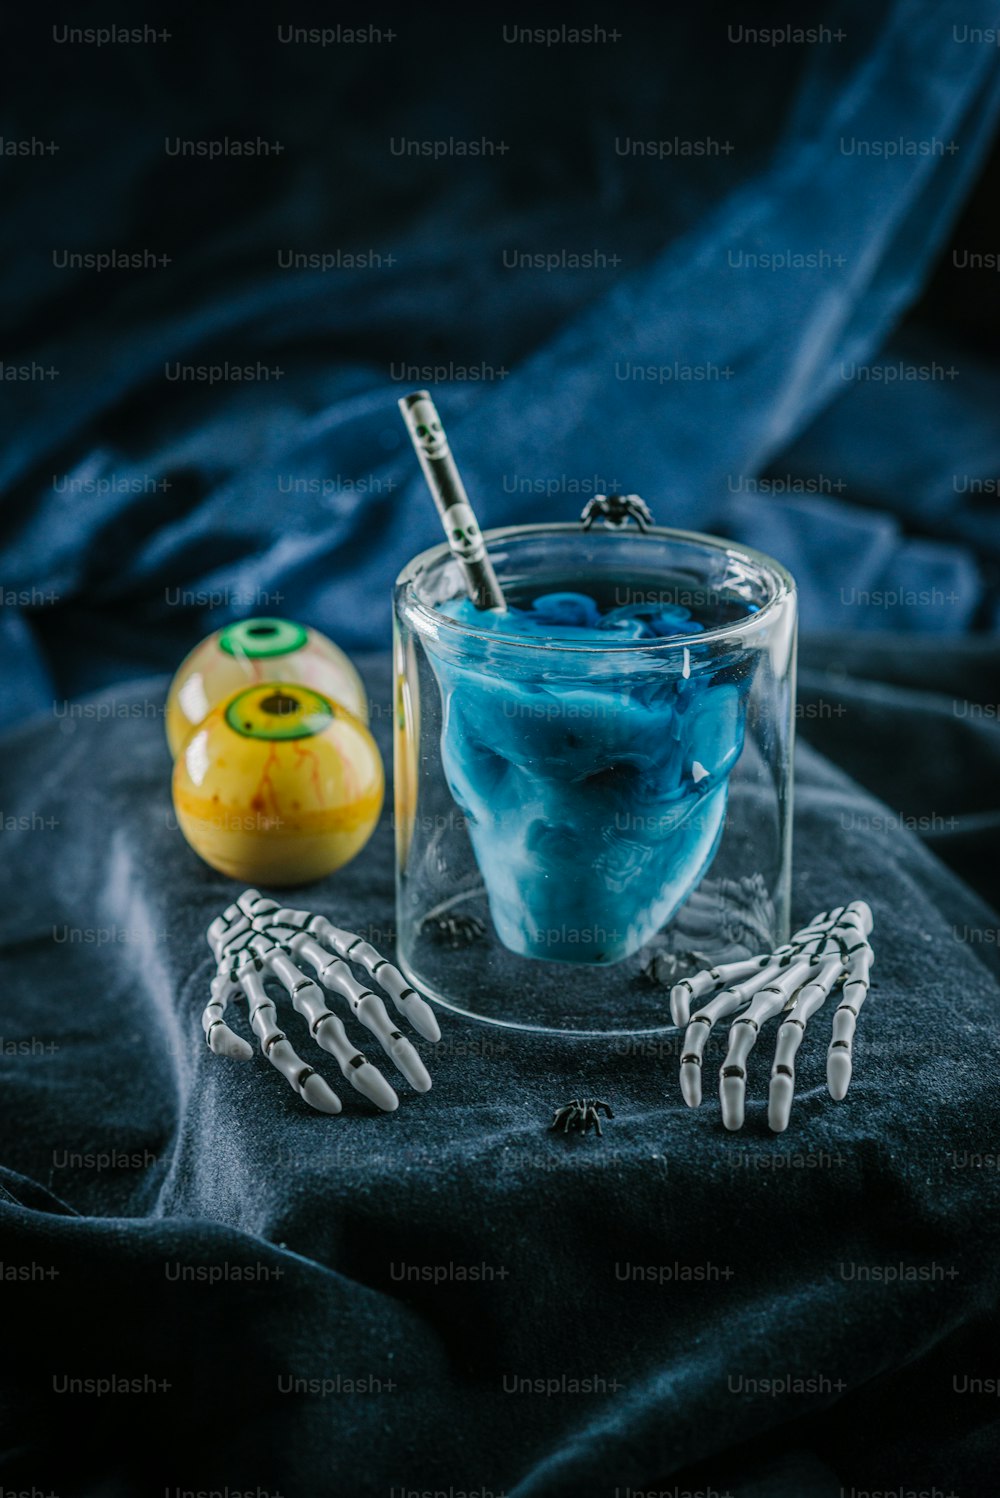 Una mano de esqueleto sosteniendo un cepillo de dientes junto a un vaso de líquido azul